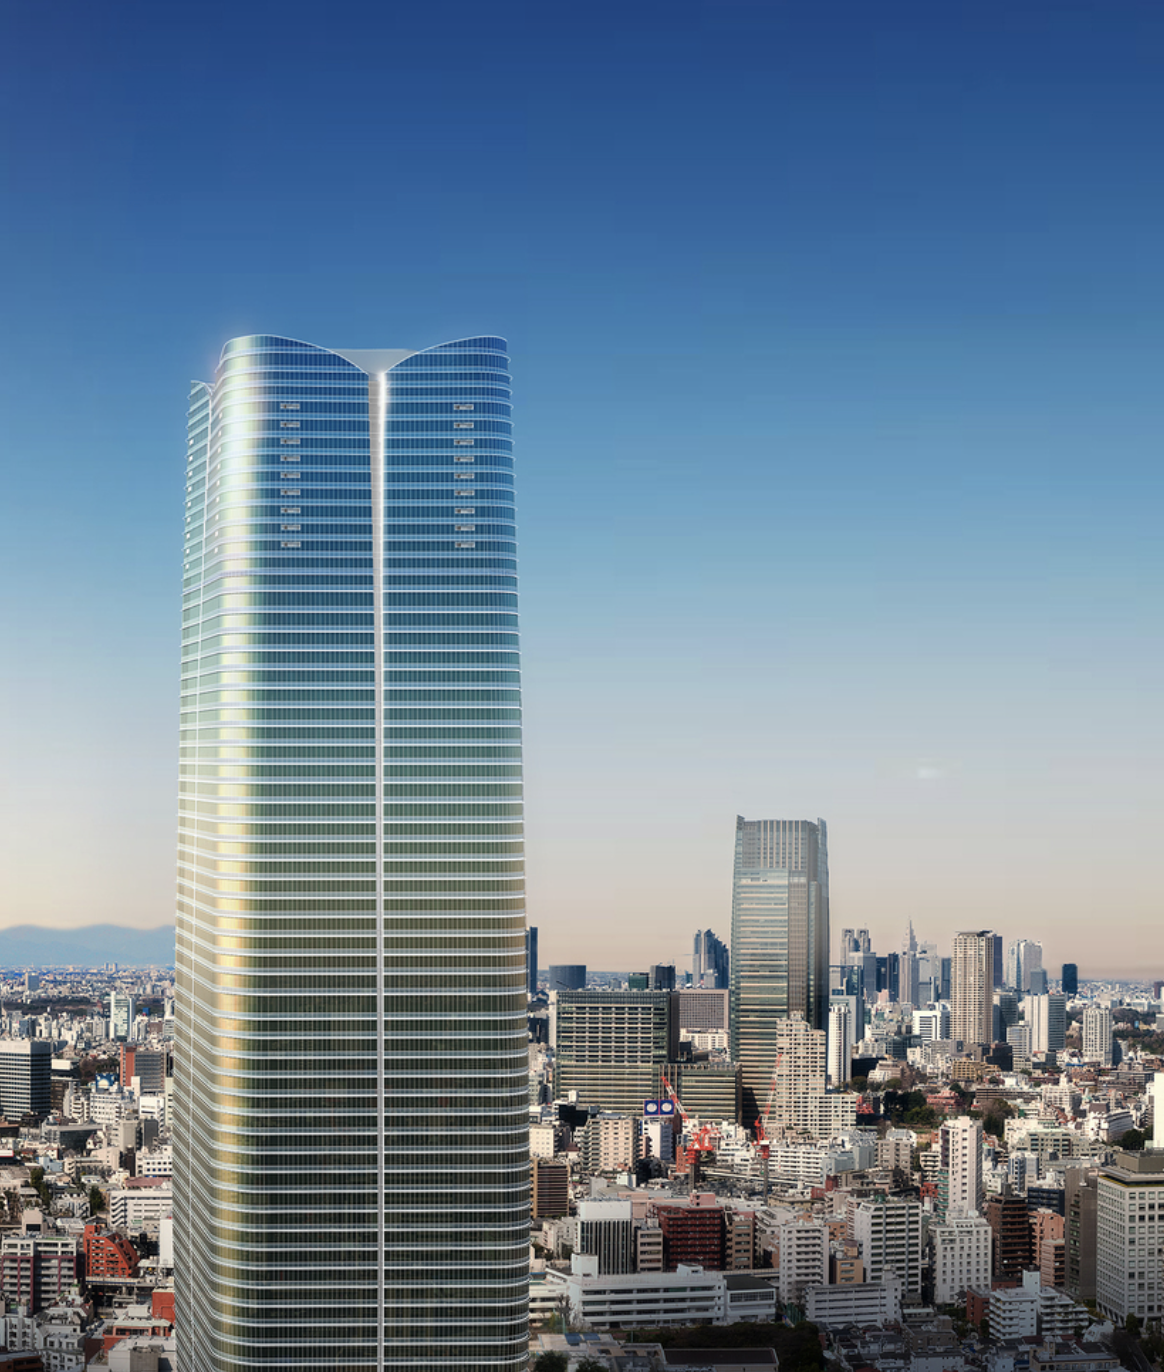 La obra póstuma de César Pelli, el actual rascacielos más alto de Tokio